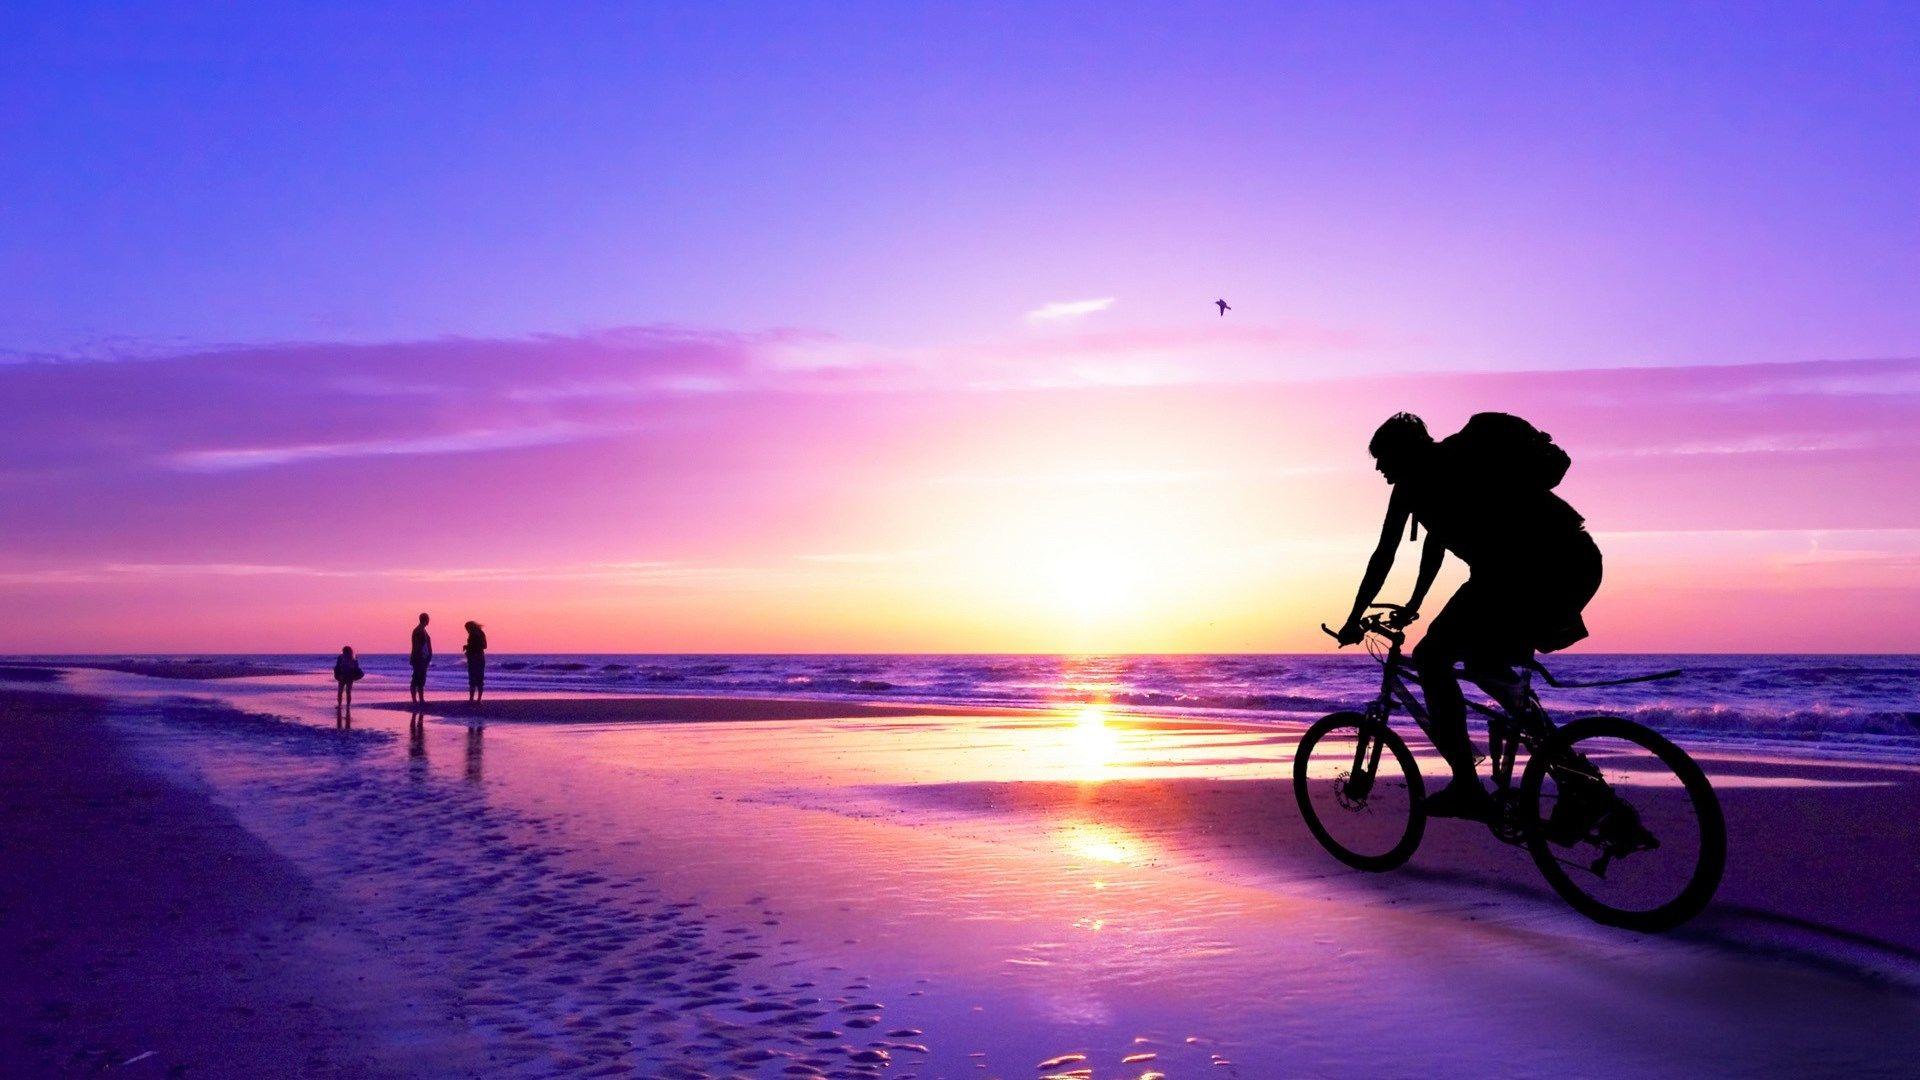 Purple Beach Sunset Wallpaper Free HD. I HD Image